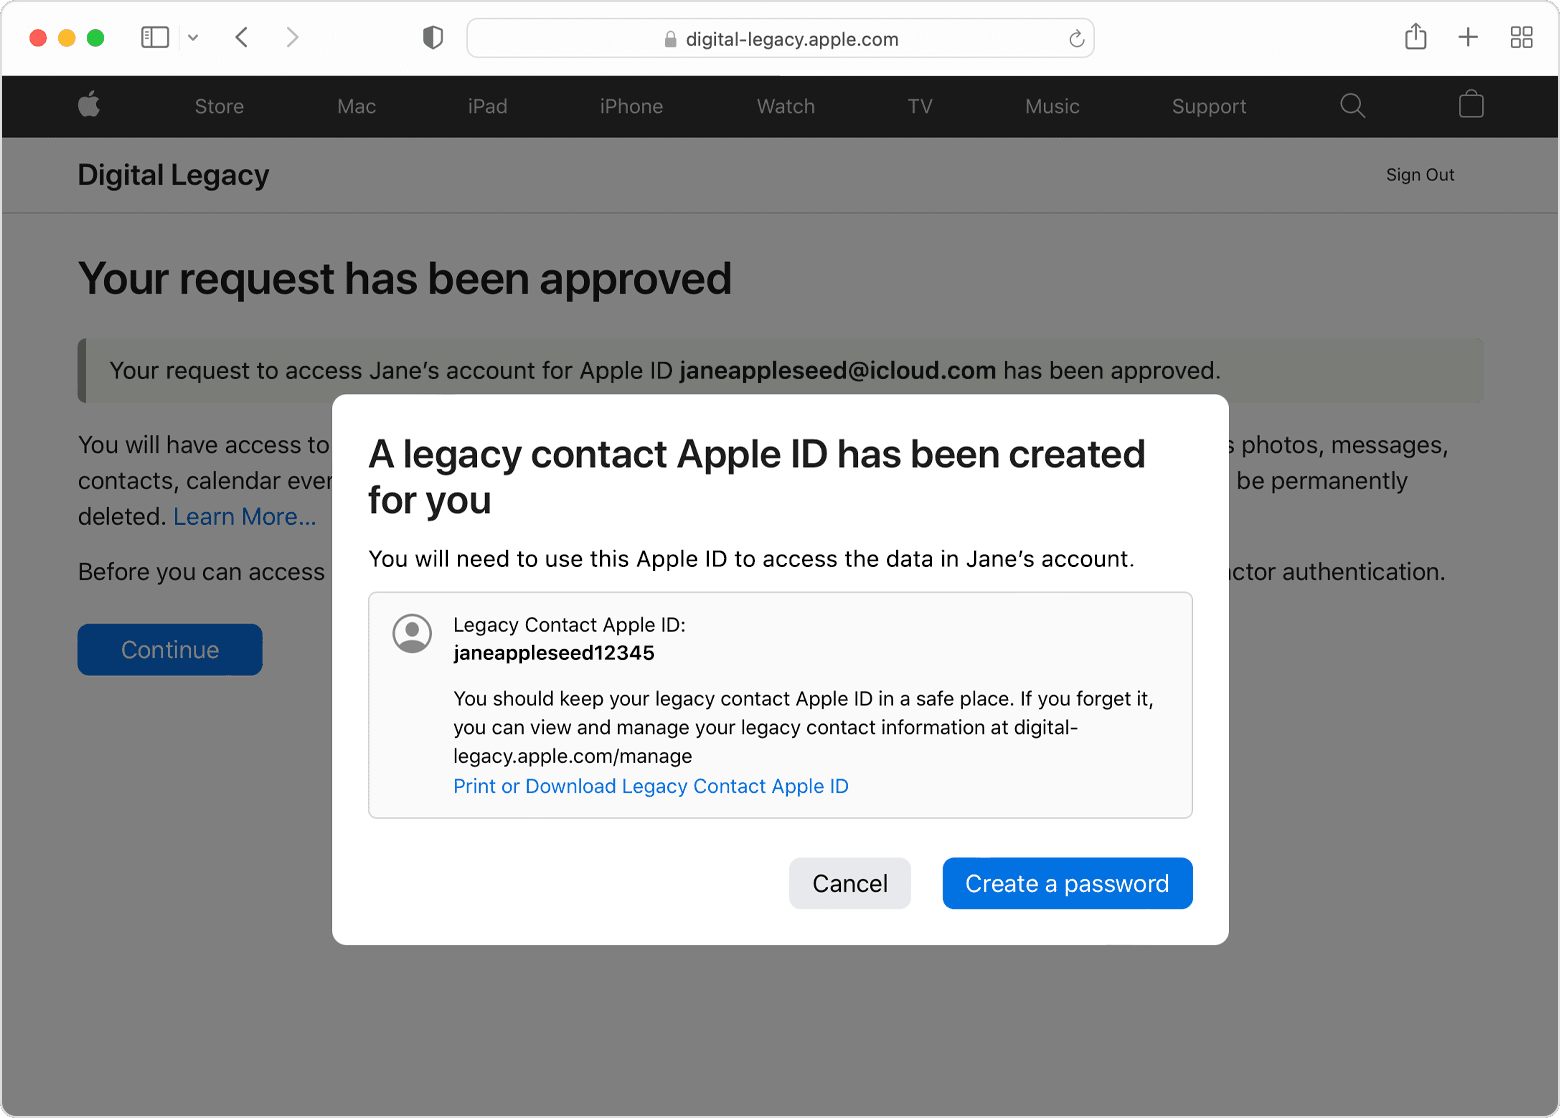 หลังจากที่คำขอผู้ติดต่อรับมรดกของคุณได้รับการอนุมัติ จะมีข้อความแจ้งให้คุณทราบว่ามีการสร้าง Apple ID สำหรับผู้ติดต่อรับมรดกให้คุณแล้ว คุณสามารถพิมพ์หรือดาวน์โหลด Apple ID สำหรับผู้ติดต่อรับมรดกนี้ หรือแตะปุ่มสร้างรหัสผ่านสีน้ำเงิน